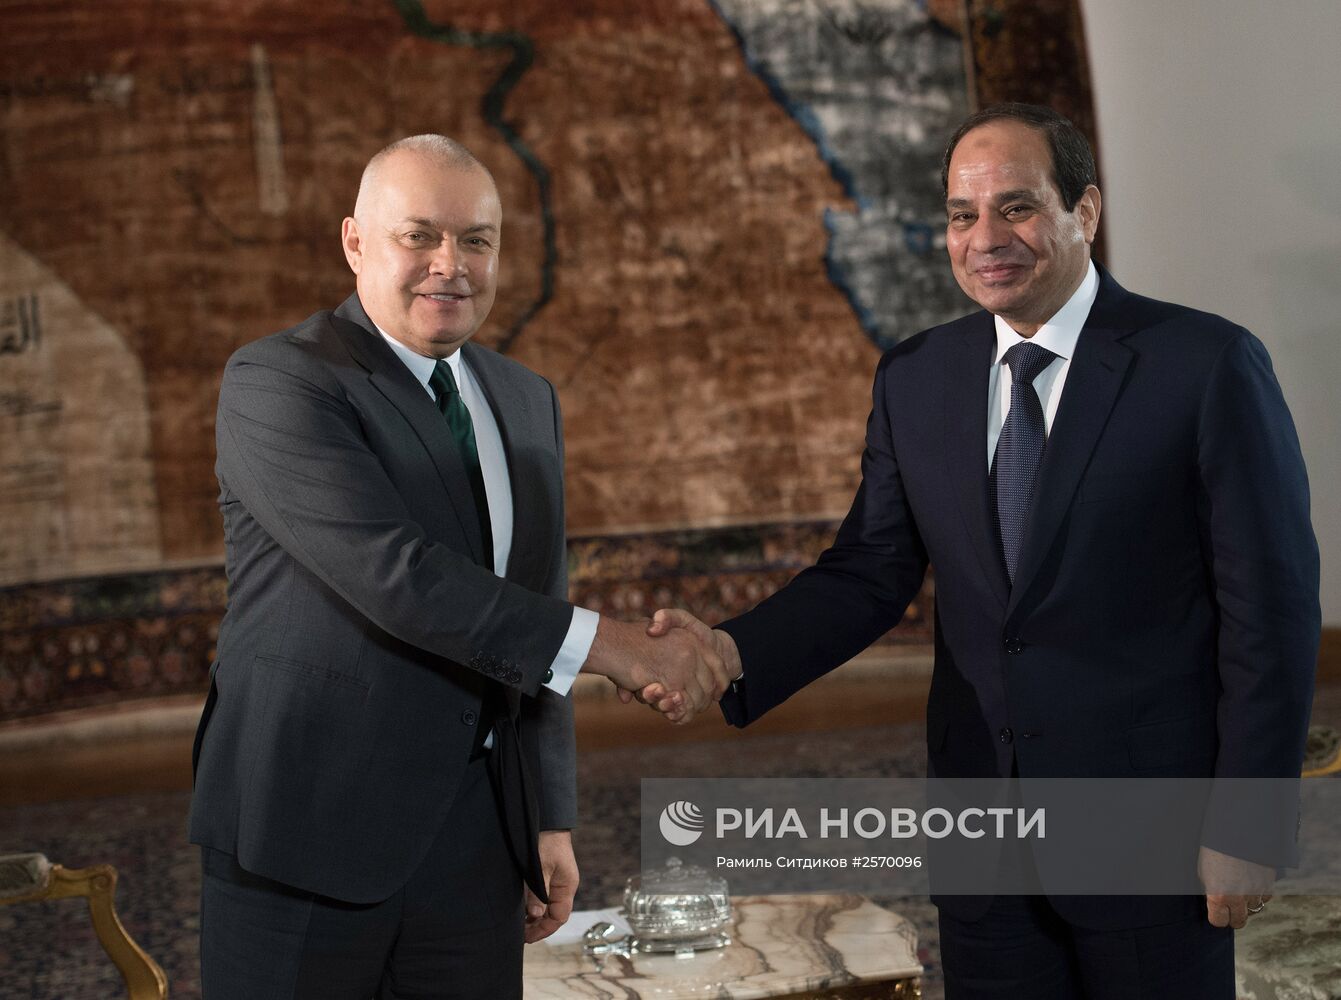 Президент Египта Абдель Фаттах Ас-Cиси дал интервью генеральному директору МИА "Россия сегодня" Д.Киселеву